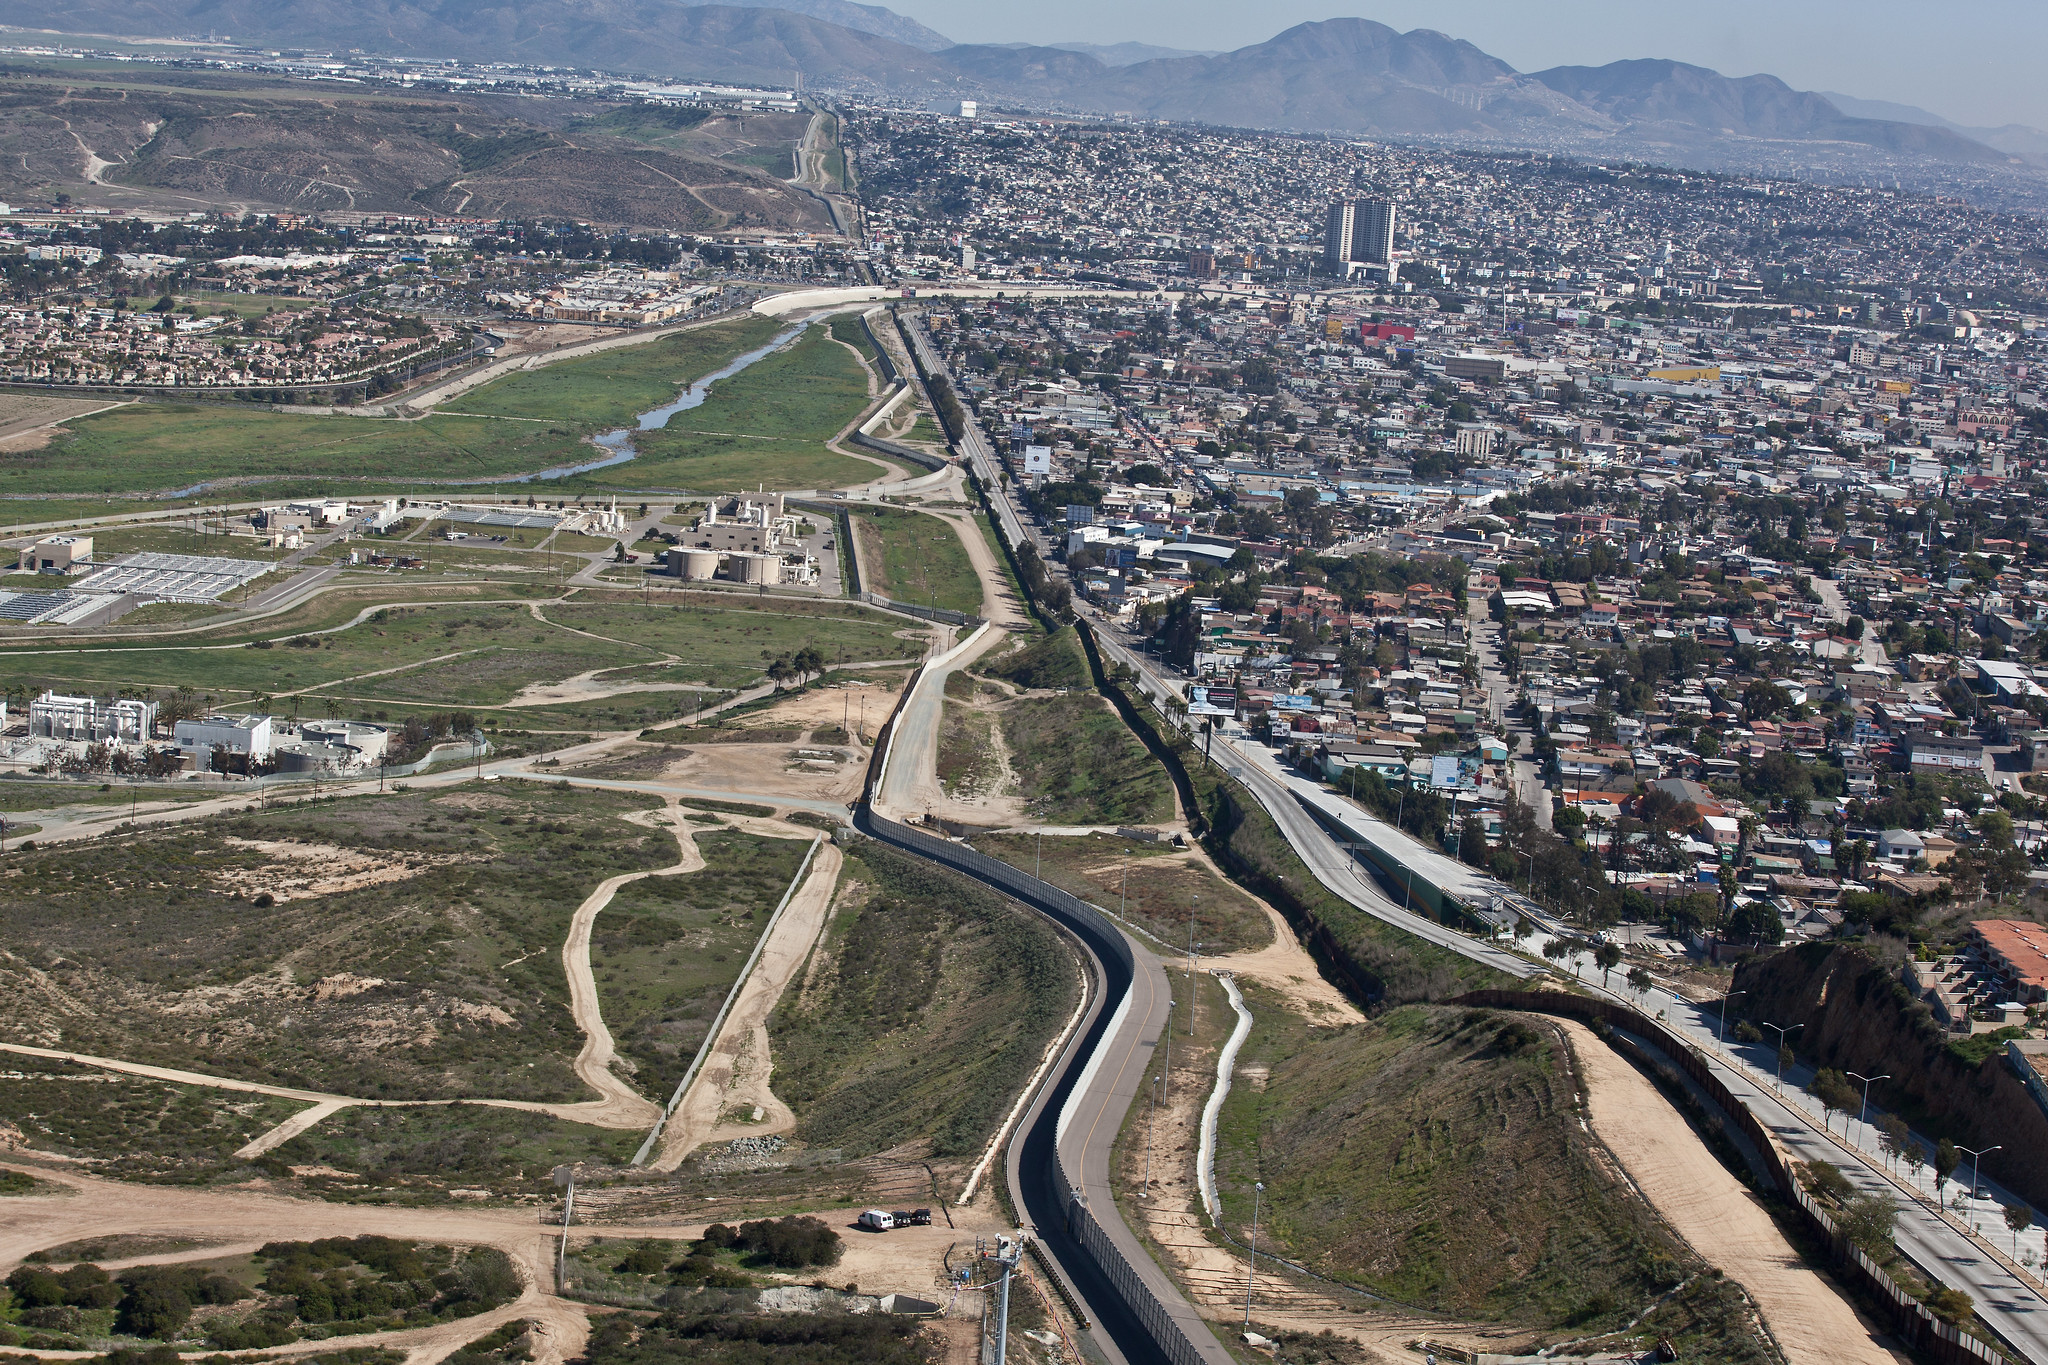 El Sistema de Infraestructura Fronteriza en San Diego es el primer ejemplo del costoso muro.